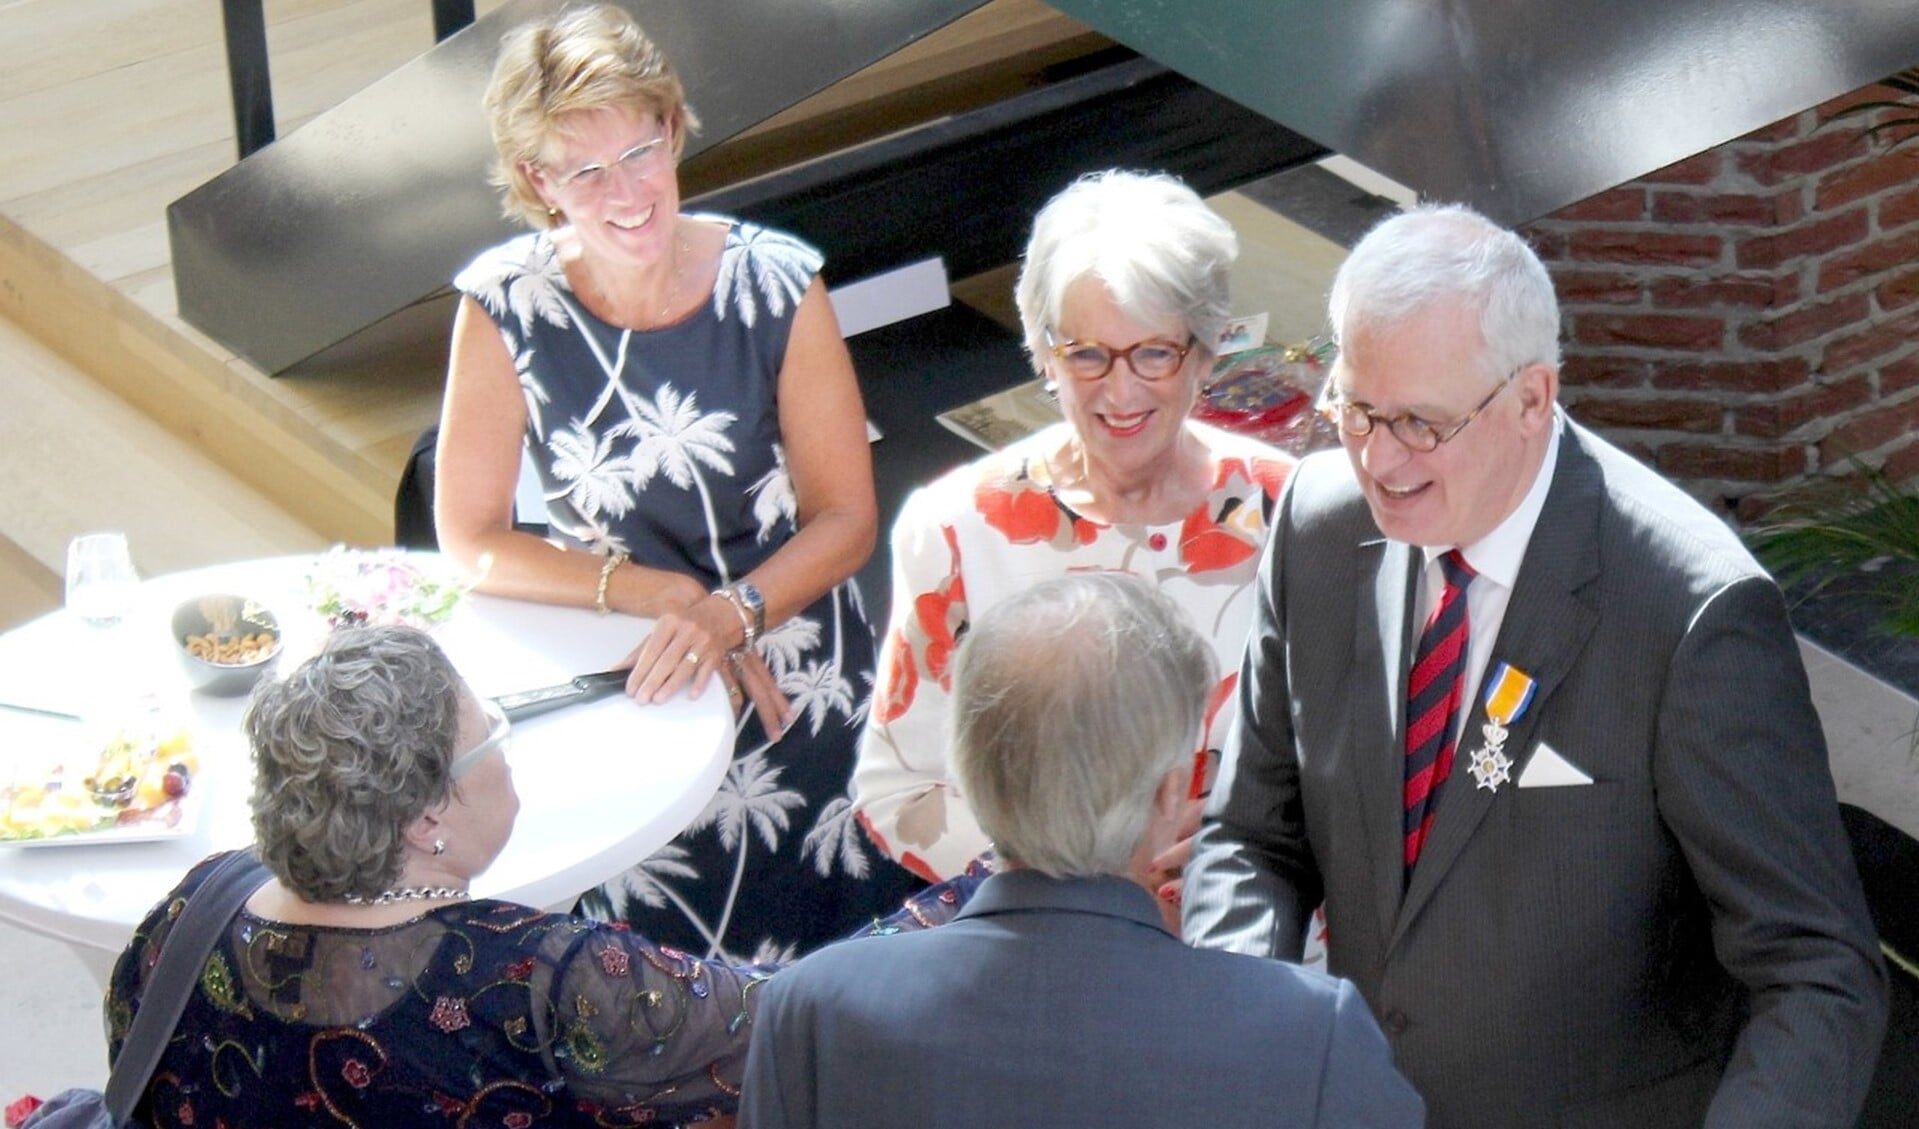 De onderscheiden burgemeester Hans van der Sluijs, geflankeerd door zijn echtgenote, tijdens de afscheidsreceptie (foto: Dick Janssen).